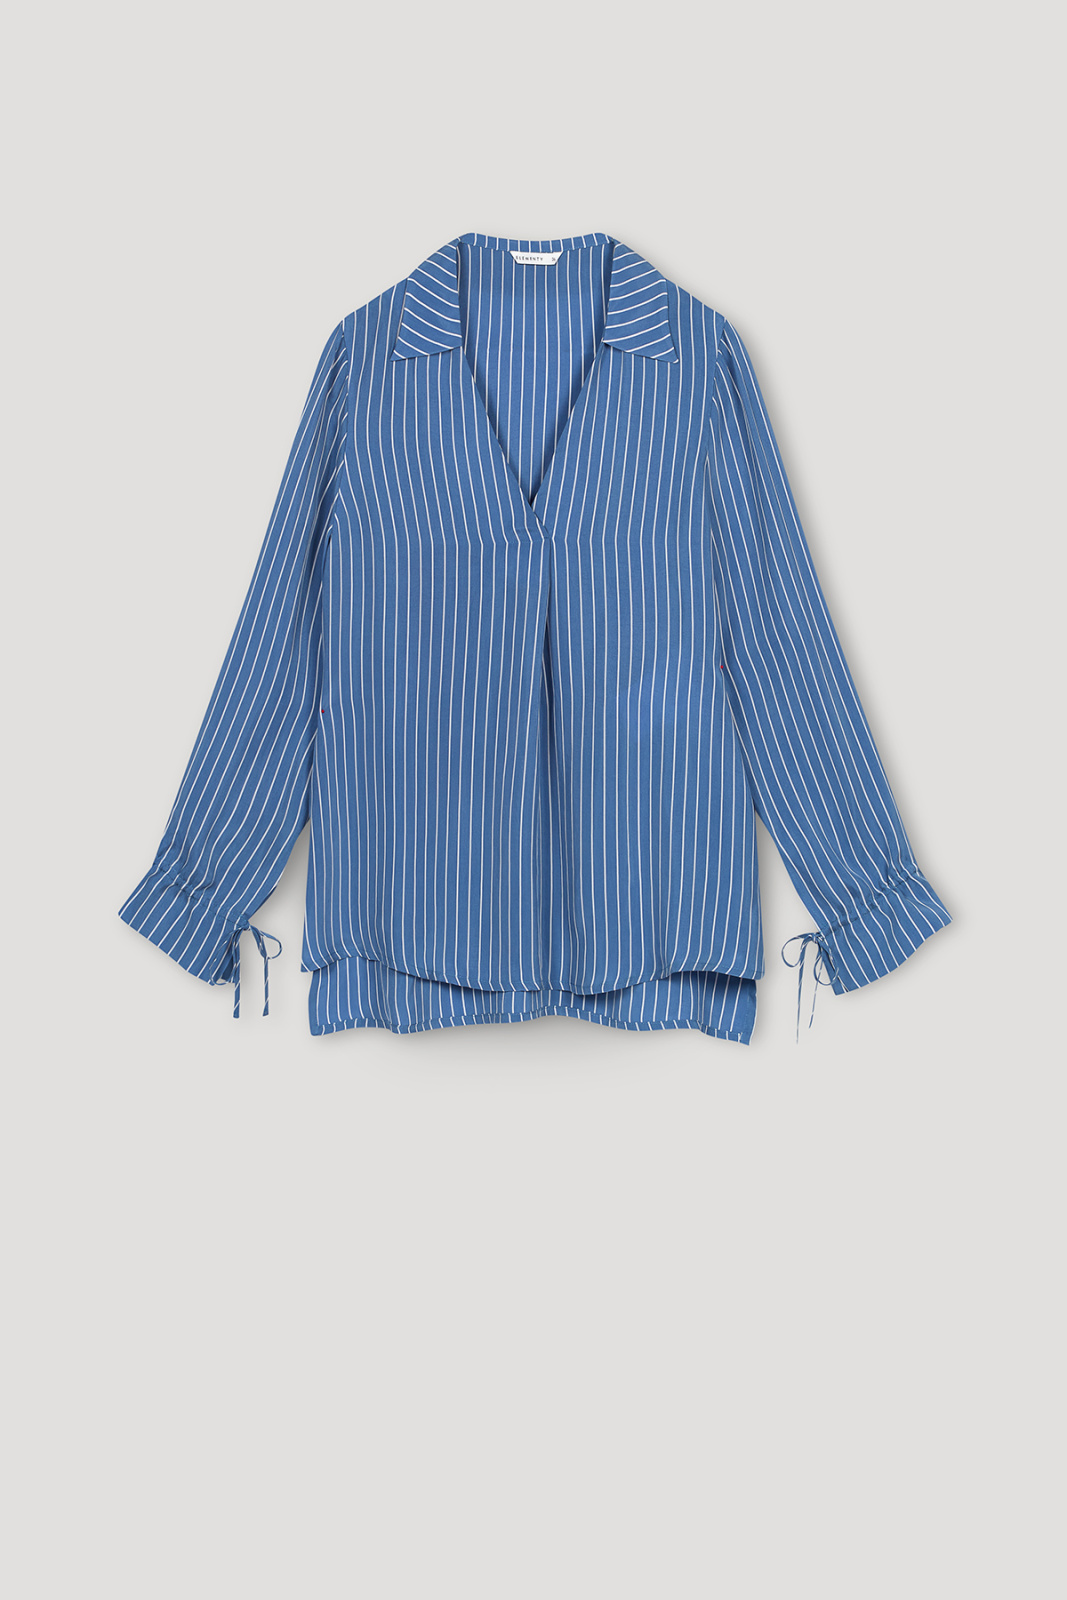 Tris Cupro Shirt Blue Stripes Outlet Elementy